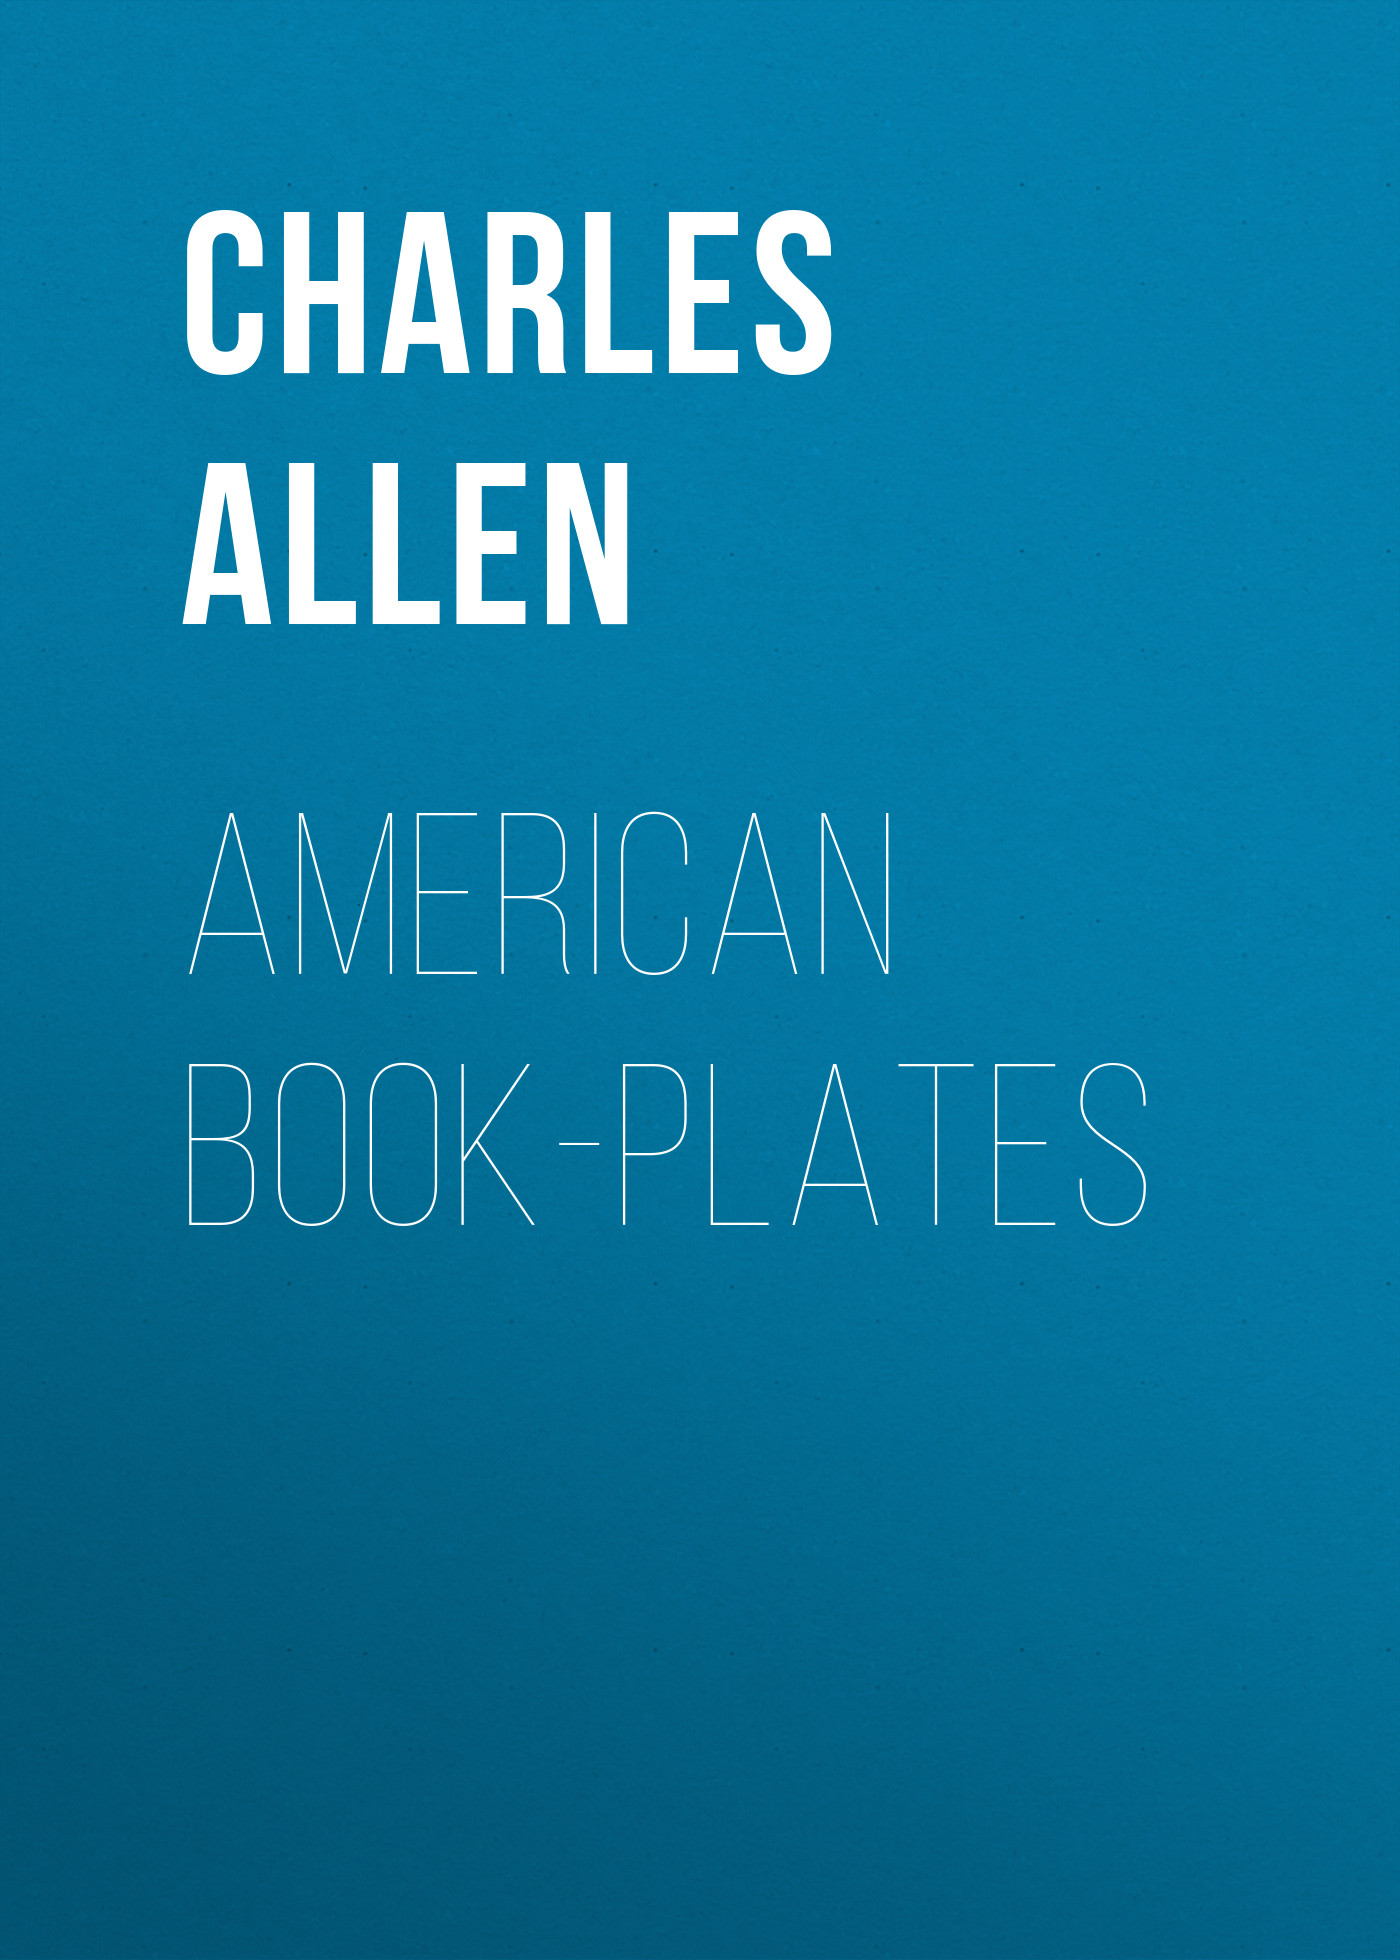 Книга American Book-Plates из серии , созданная Charles Allen, может относится к жанру Зарубежная старинная литература, Зарубежная классика. Стоимость электронной книги American Book-Plates с идентификатором 24172268 составляет 5.99 руб.